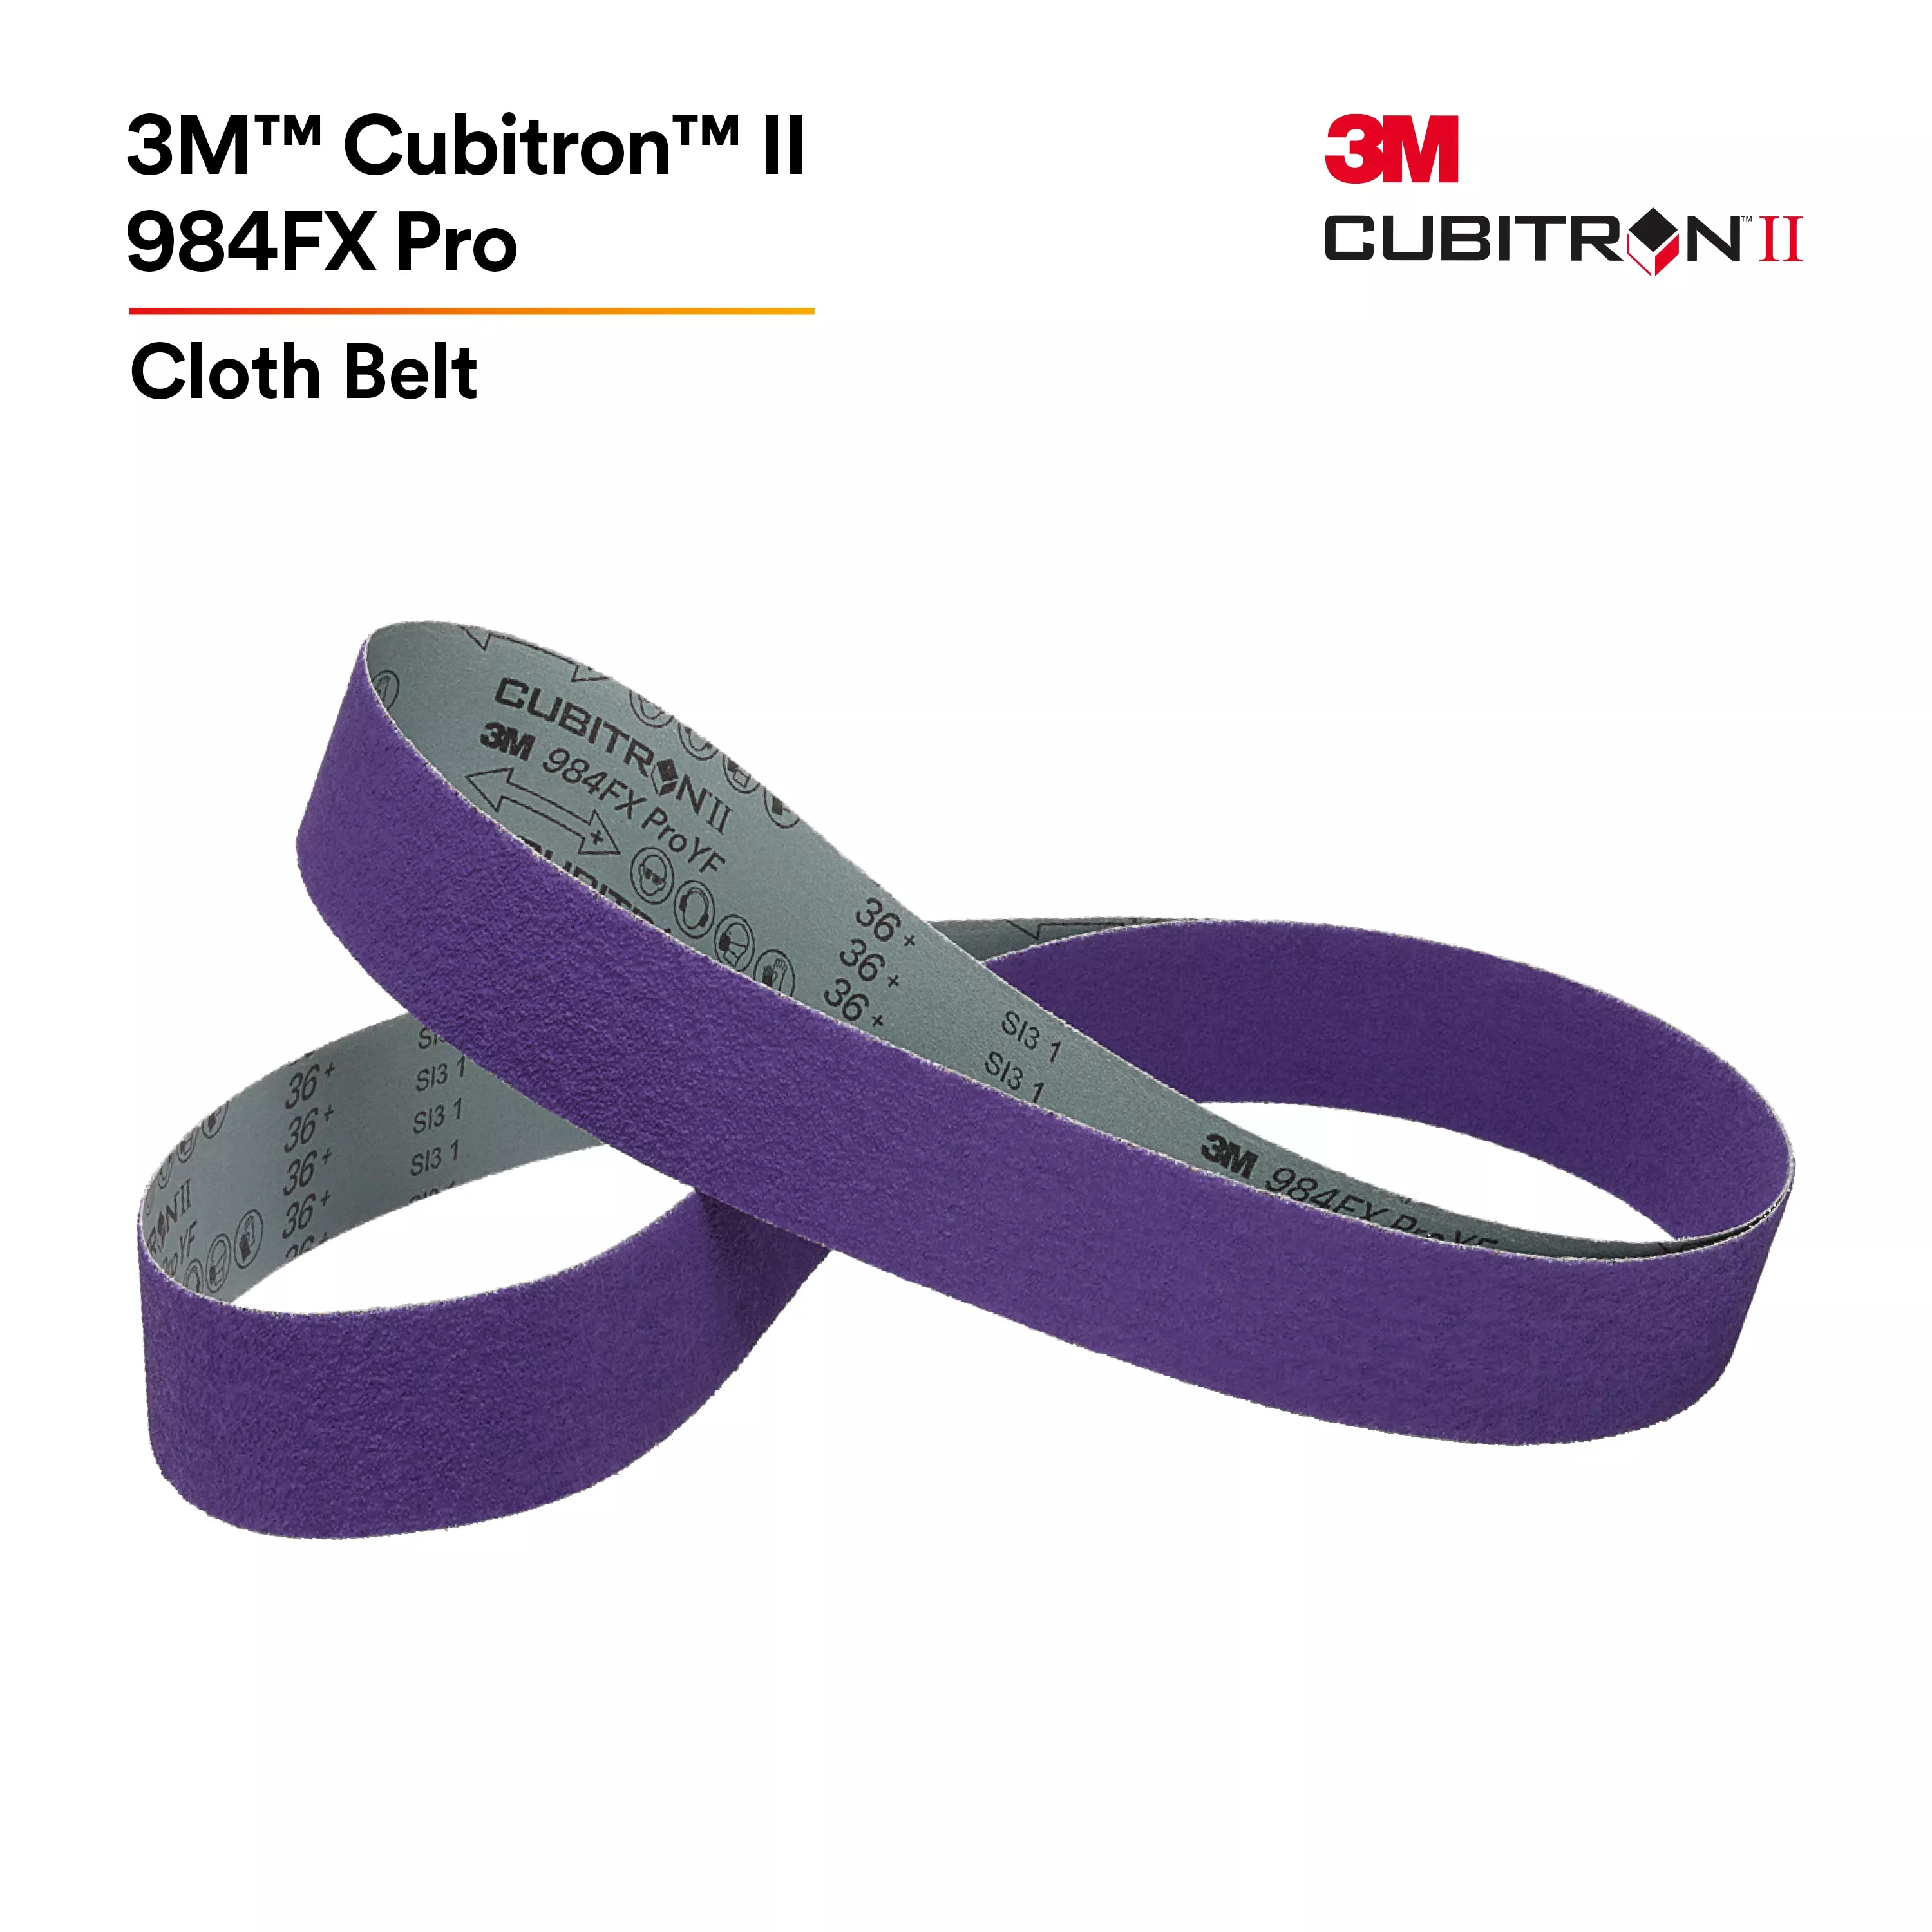 UPC 00638060882696 | 3M™ Cubitron™ II Cloth Belt 984FX Pro